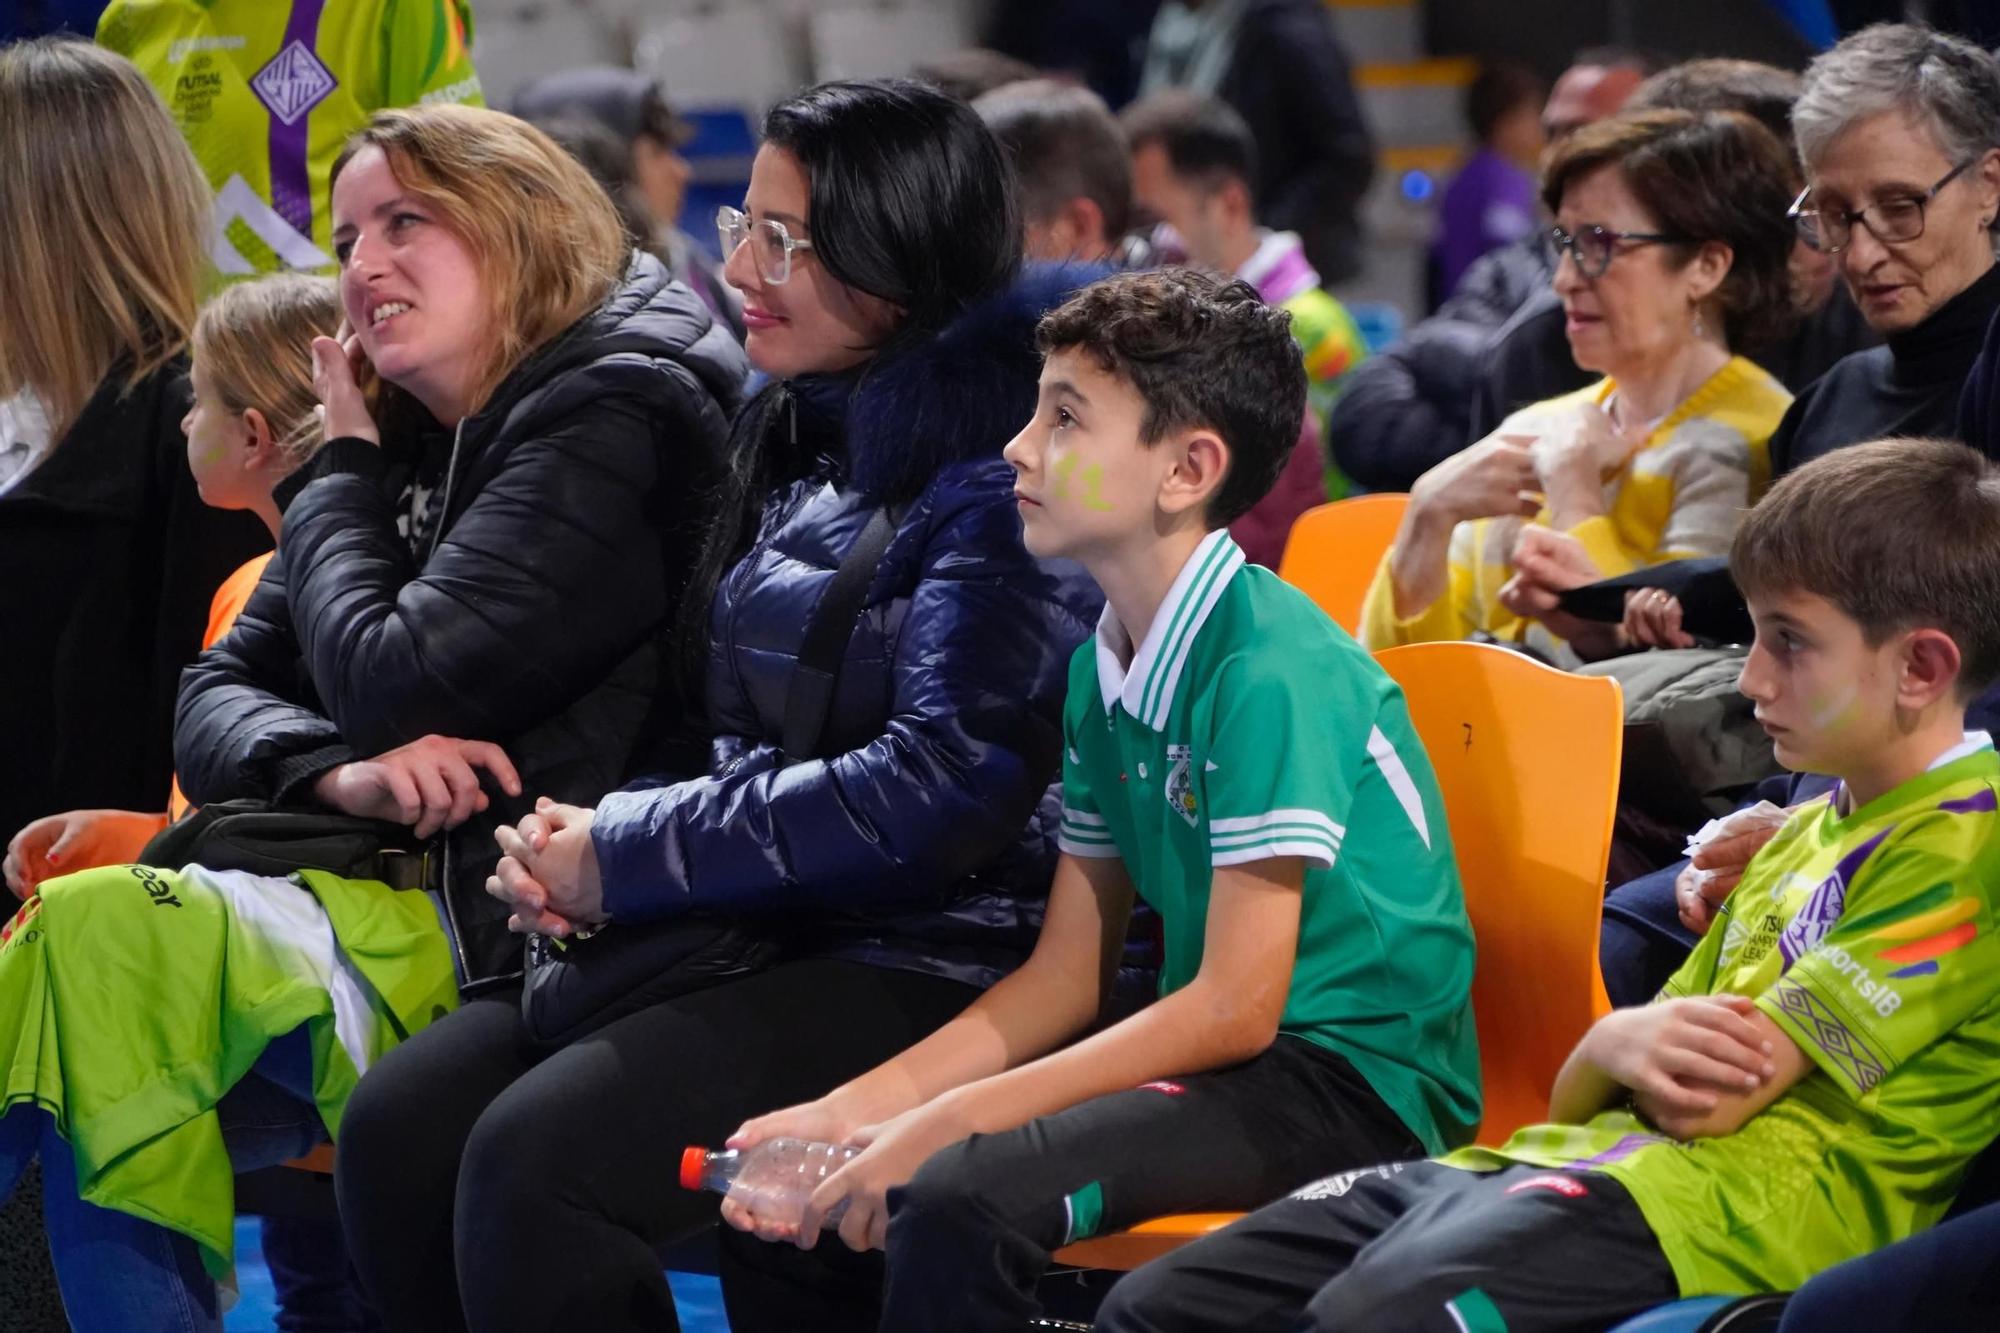 La afición también vivió el triunfo del Palma Futsal en Son Moix